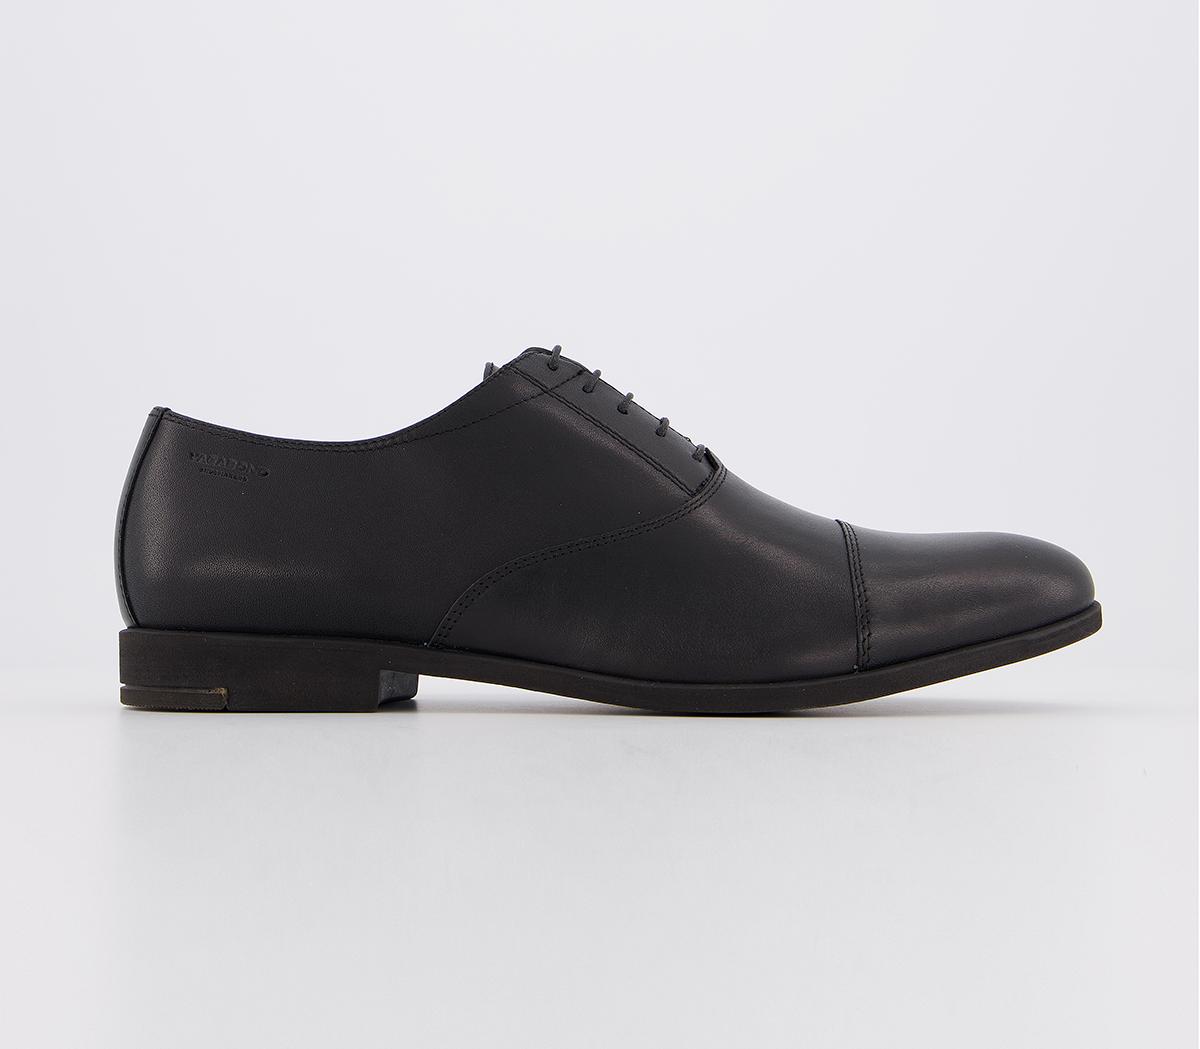 Vagabond Shoemakers Linhope Toe Cap Shoes Black - Men’s Smart Shoes